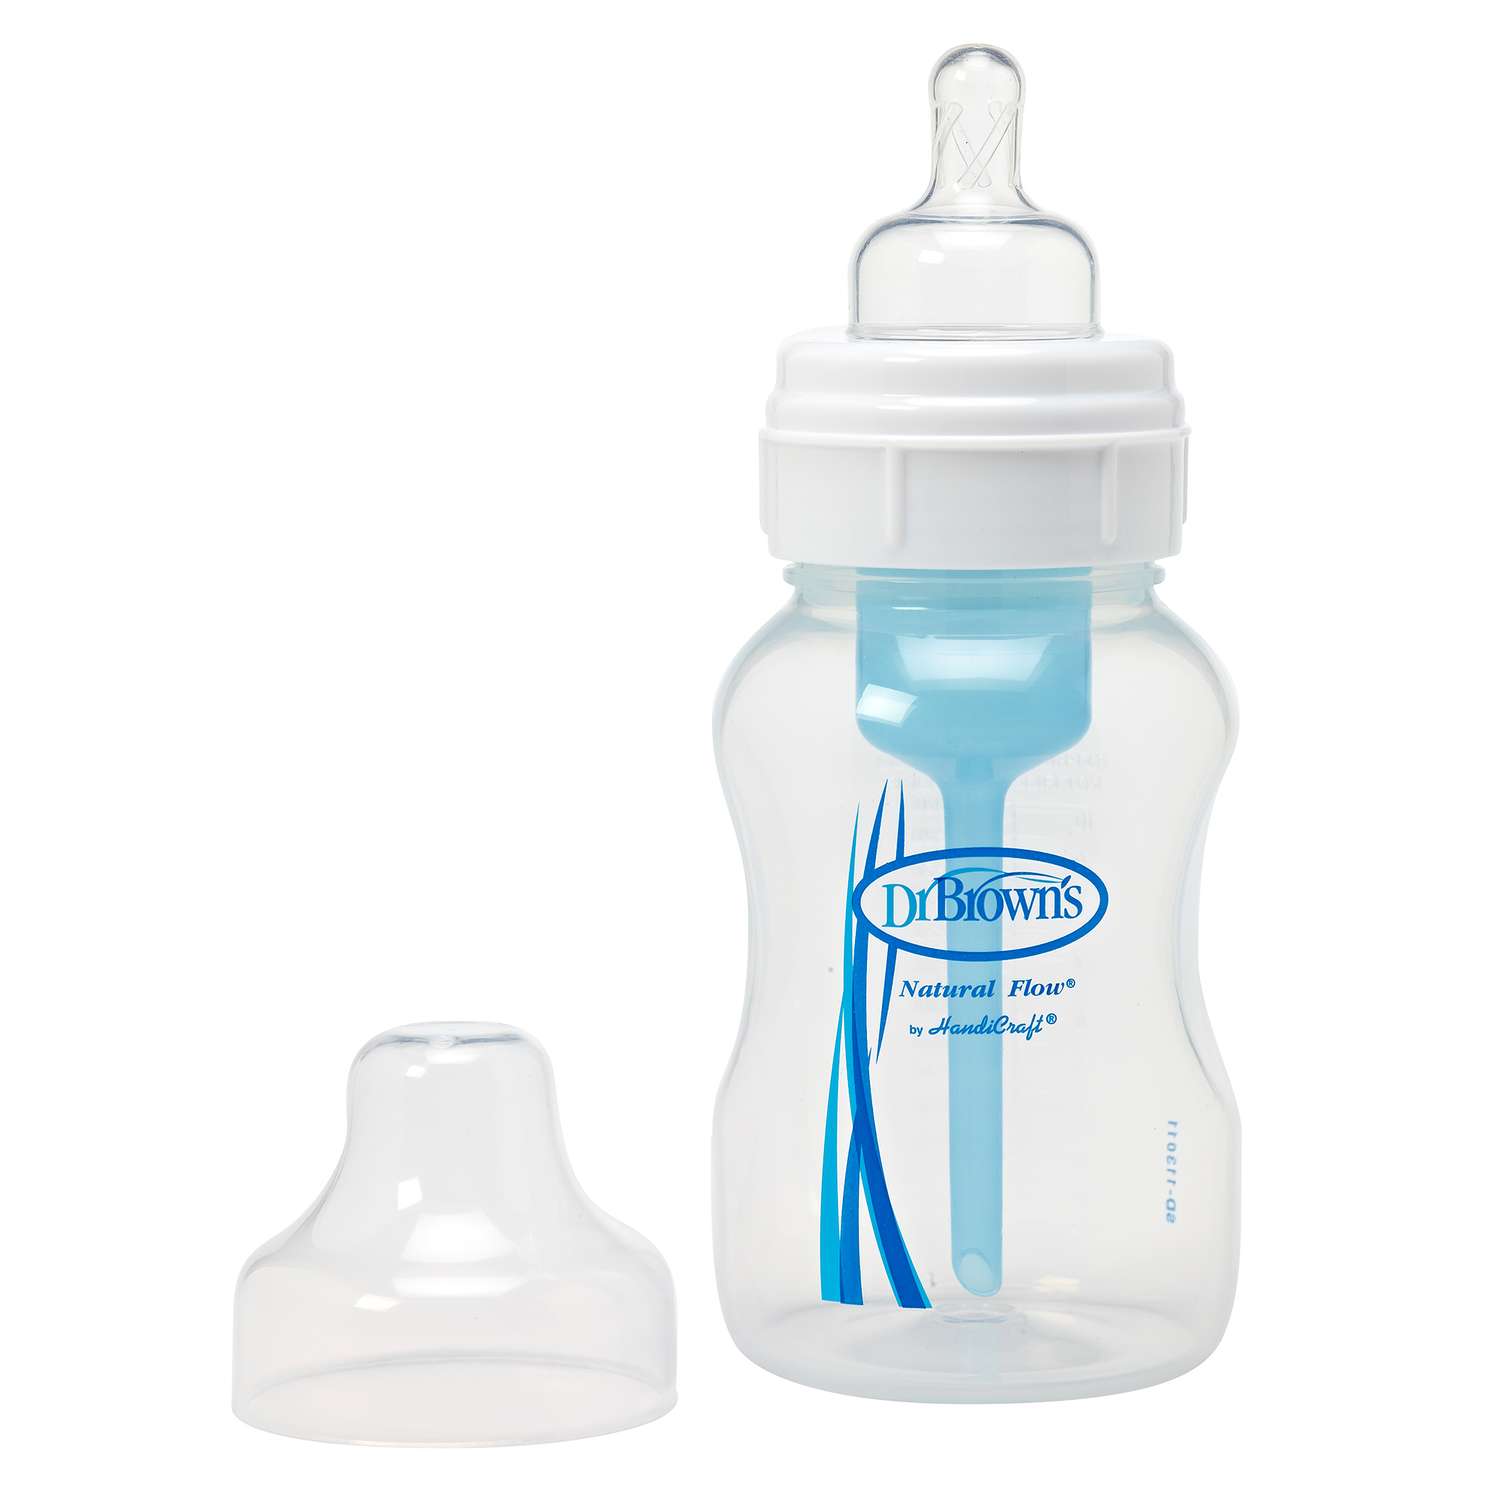 Бутылочка 8 в 1. Zero Zero Suavinex бутылочка. Доктор Браун бутылочки для новорожденных. Dr.Brown's бутылочки для новорожденных. Противоколиковые бутылочки для новорожденных.